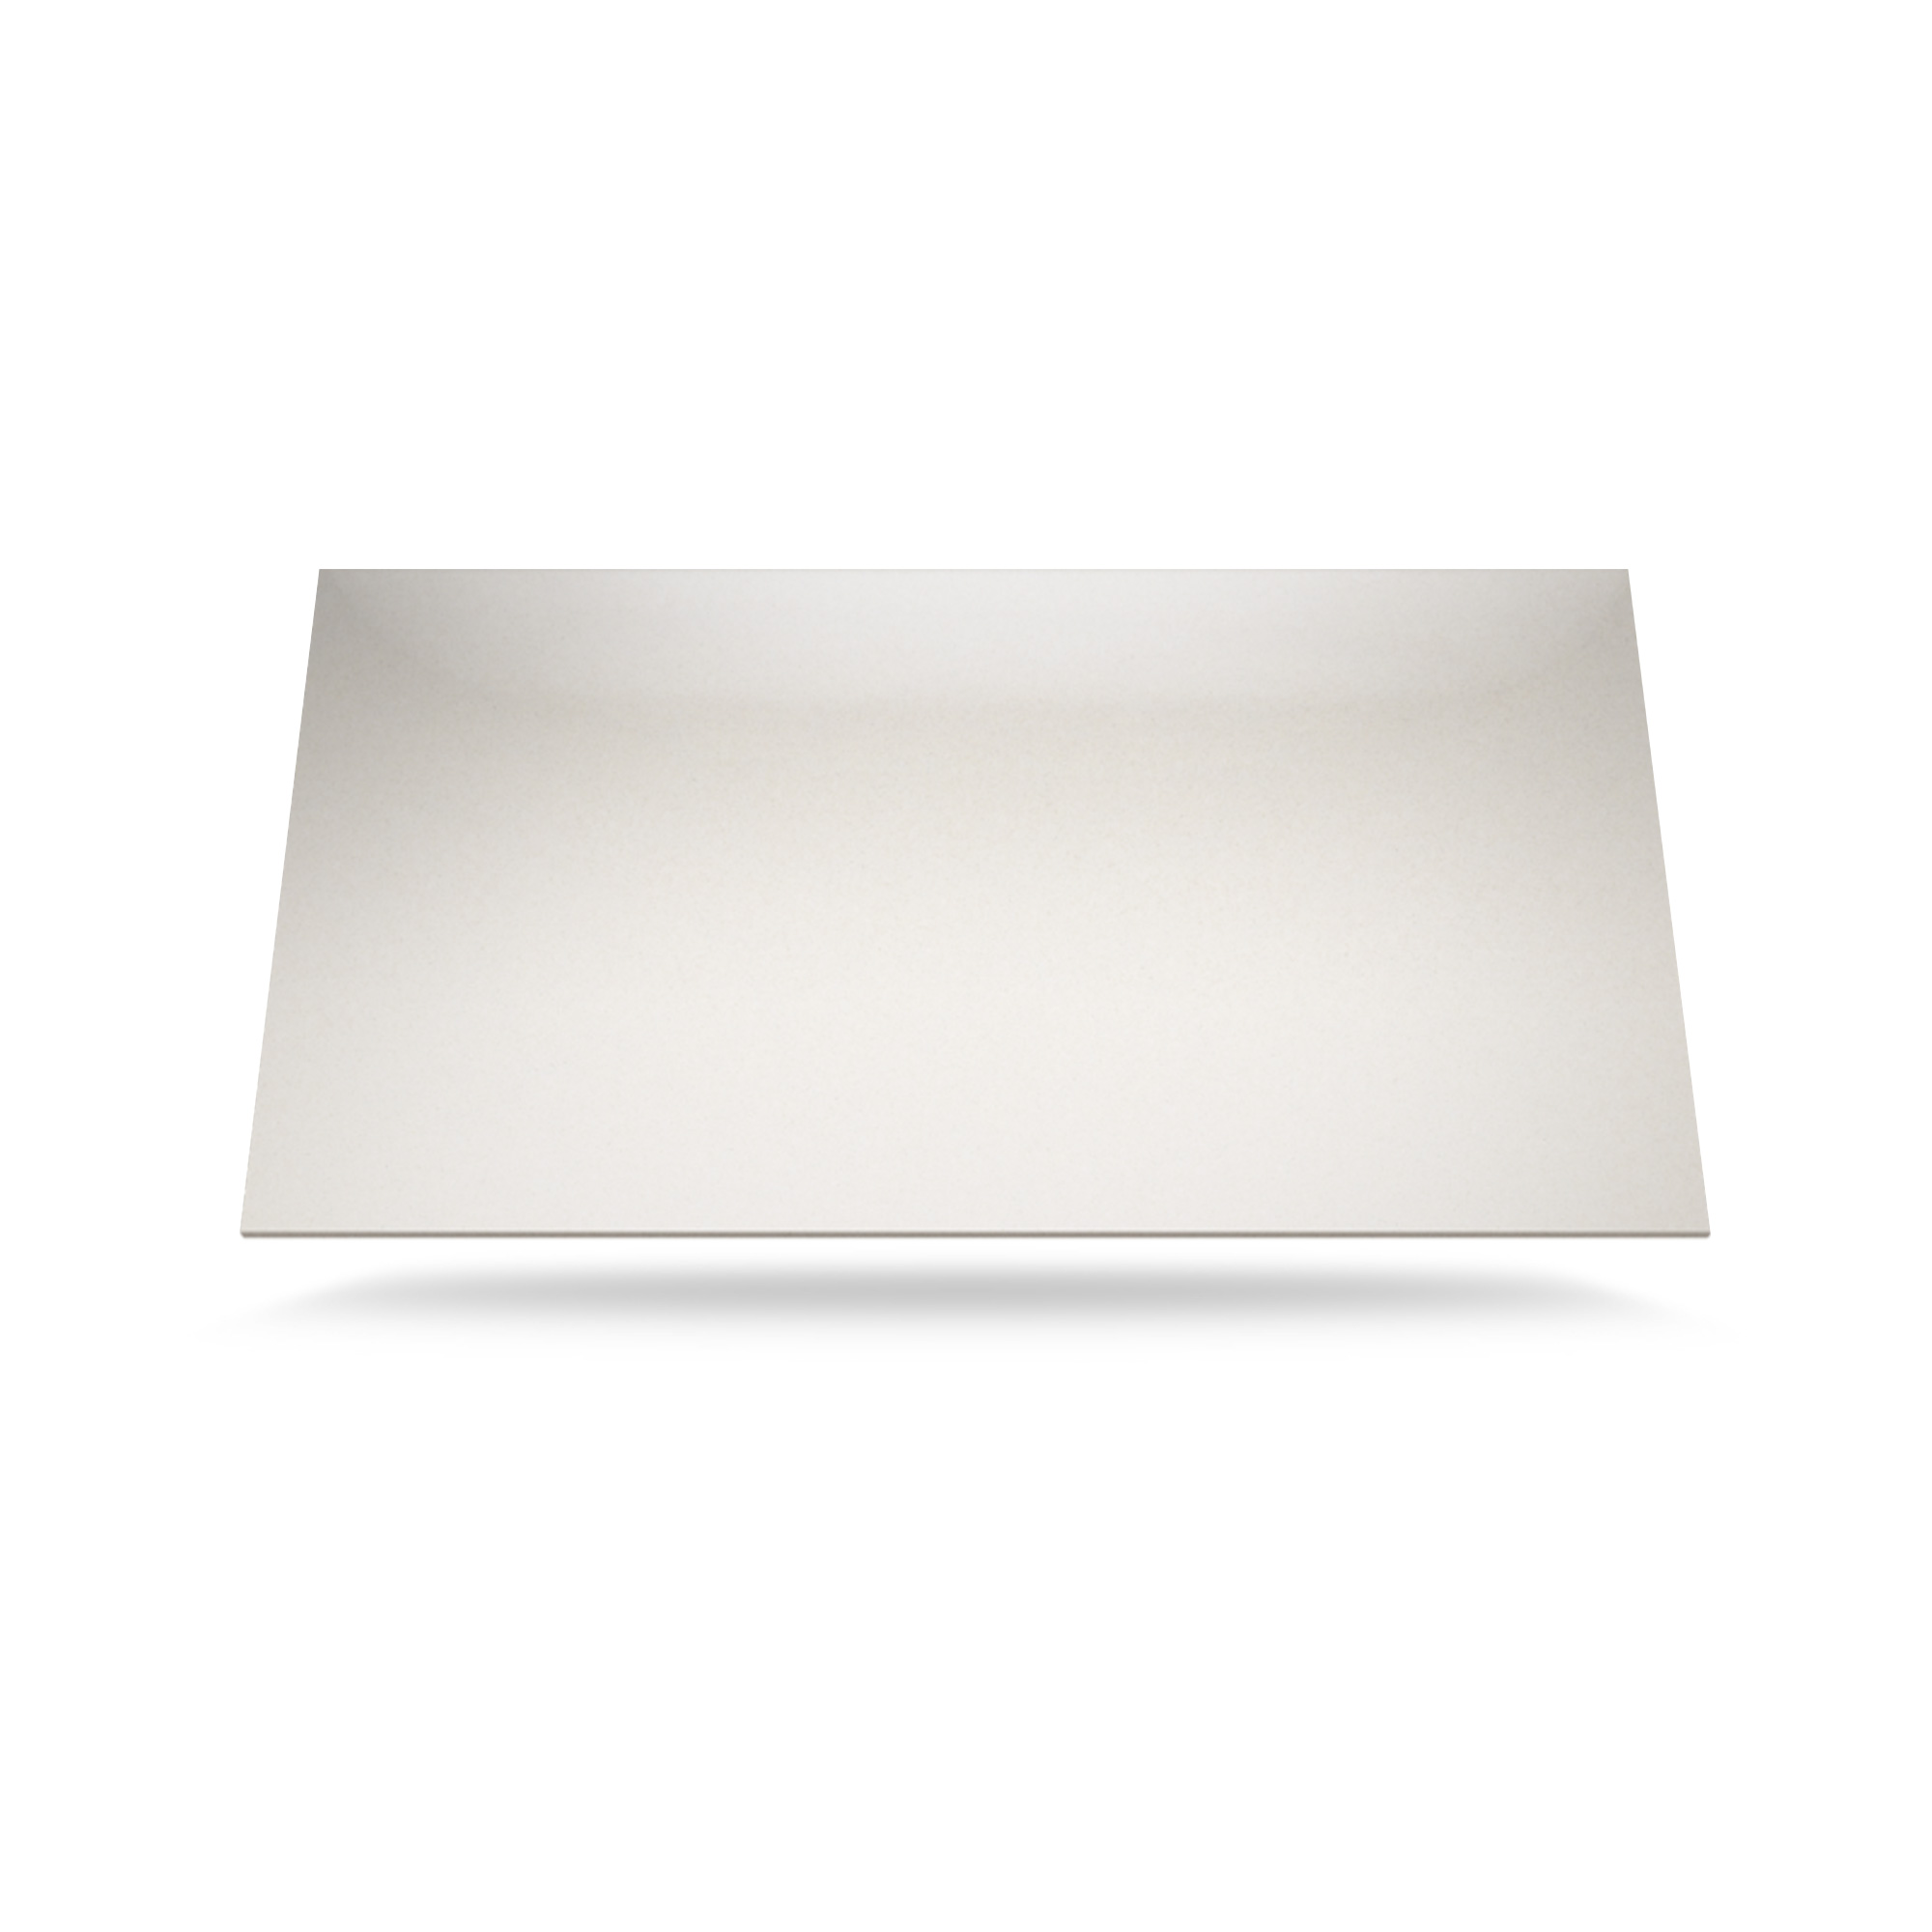 Billede af Blanco Maple Poleret Silestone bordplade på mål